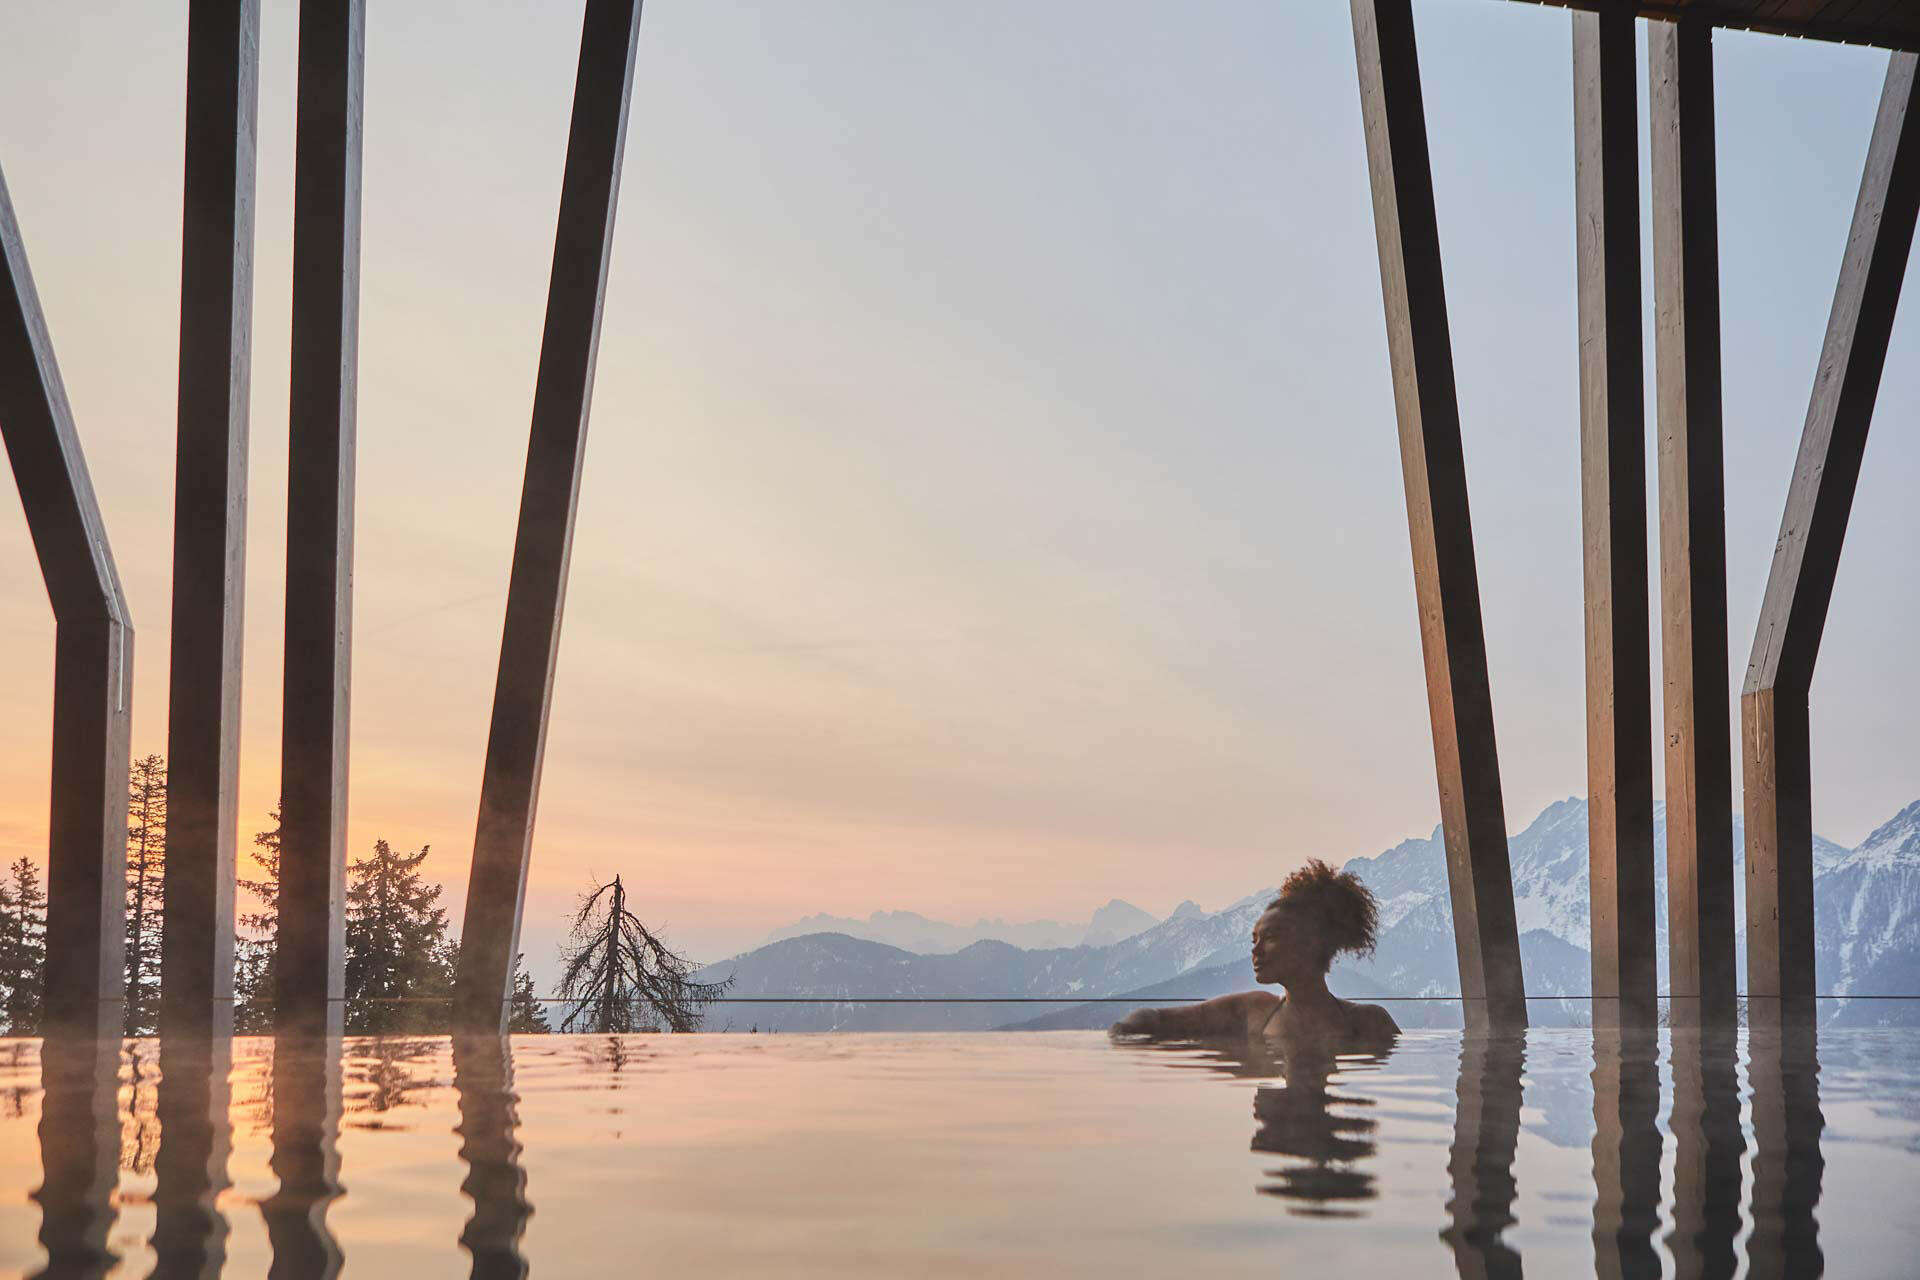 Frau in einem Infinity Pool während des Sonnenuntergangs. Im Hintergrund sind Berge.